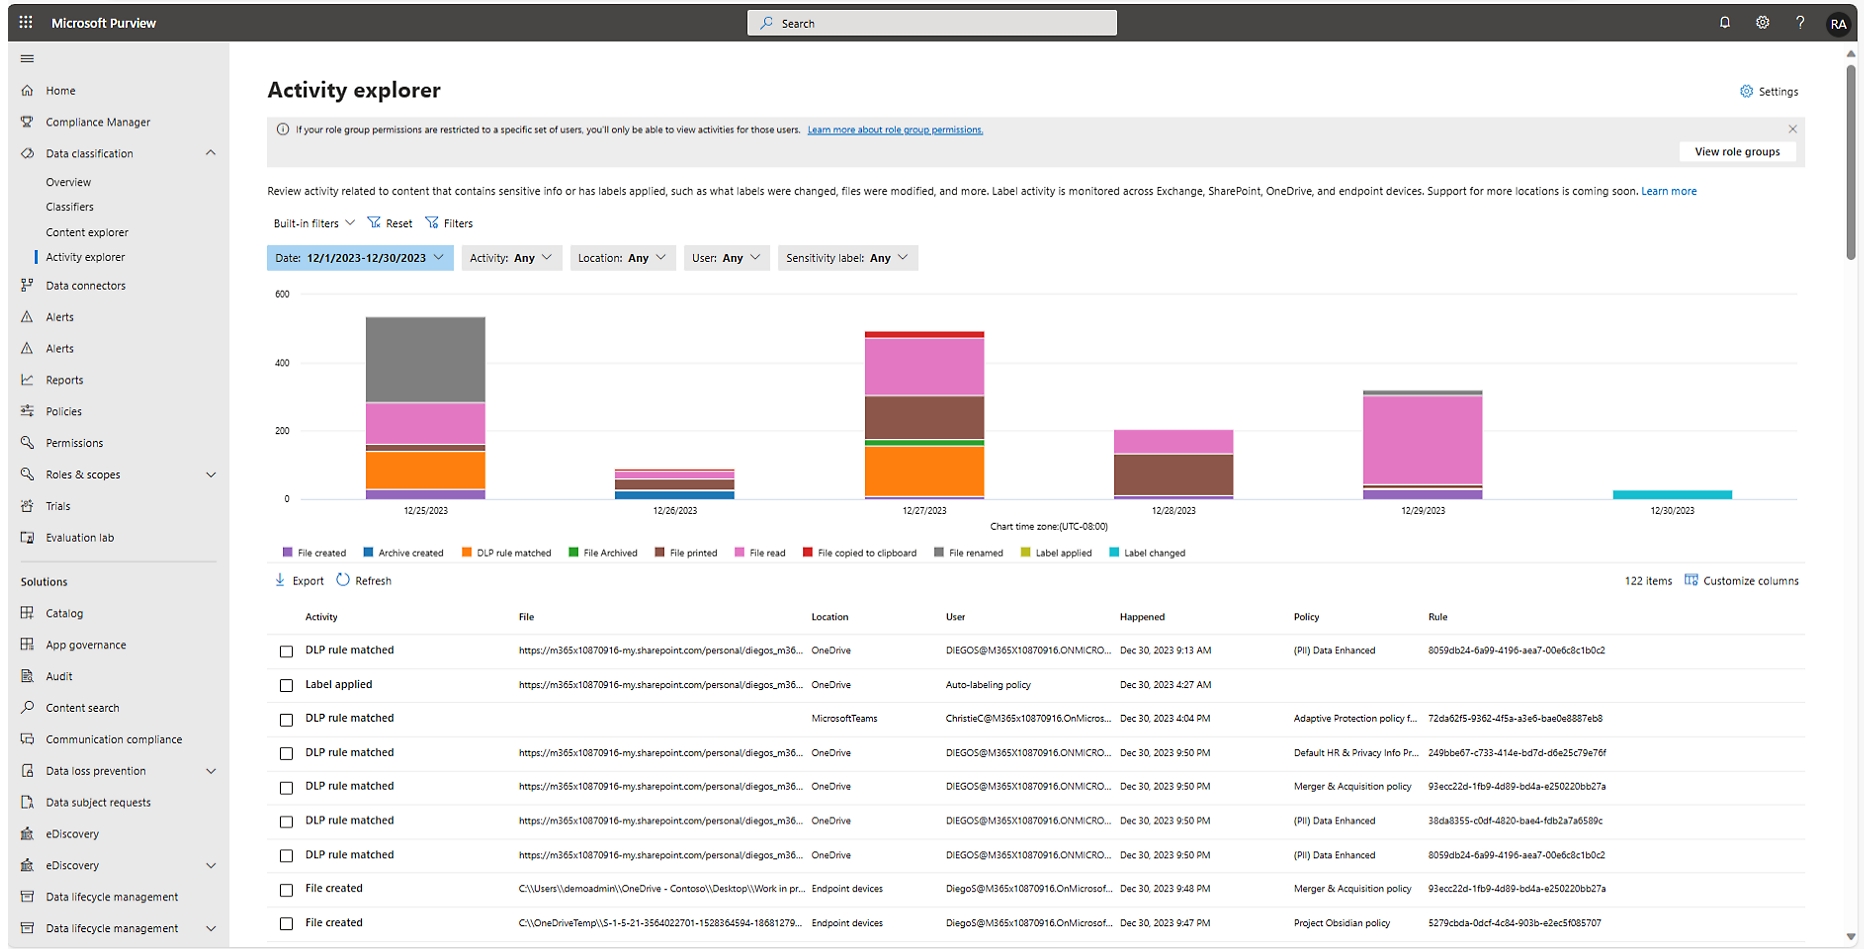 Interfaz del explorador de actividades del Centro de partners de Microsoft, que muestra un gráfico y una tabla con datos sobre las actividades de los usuarios.